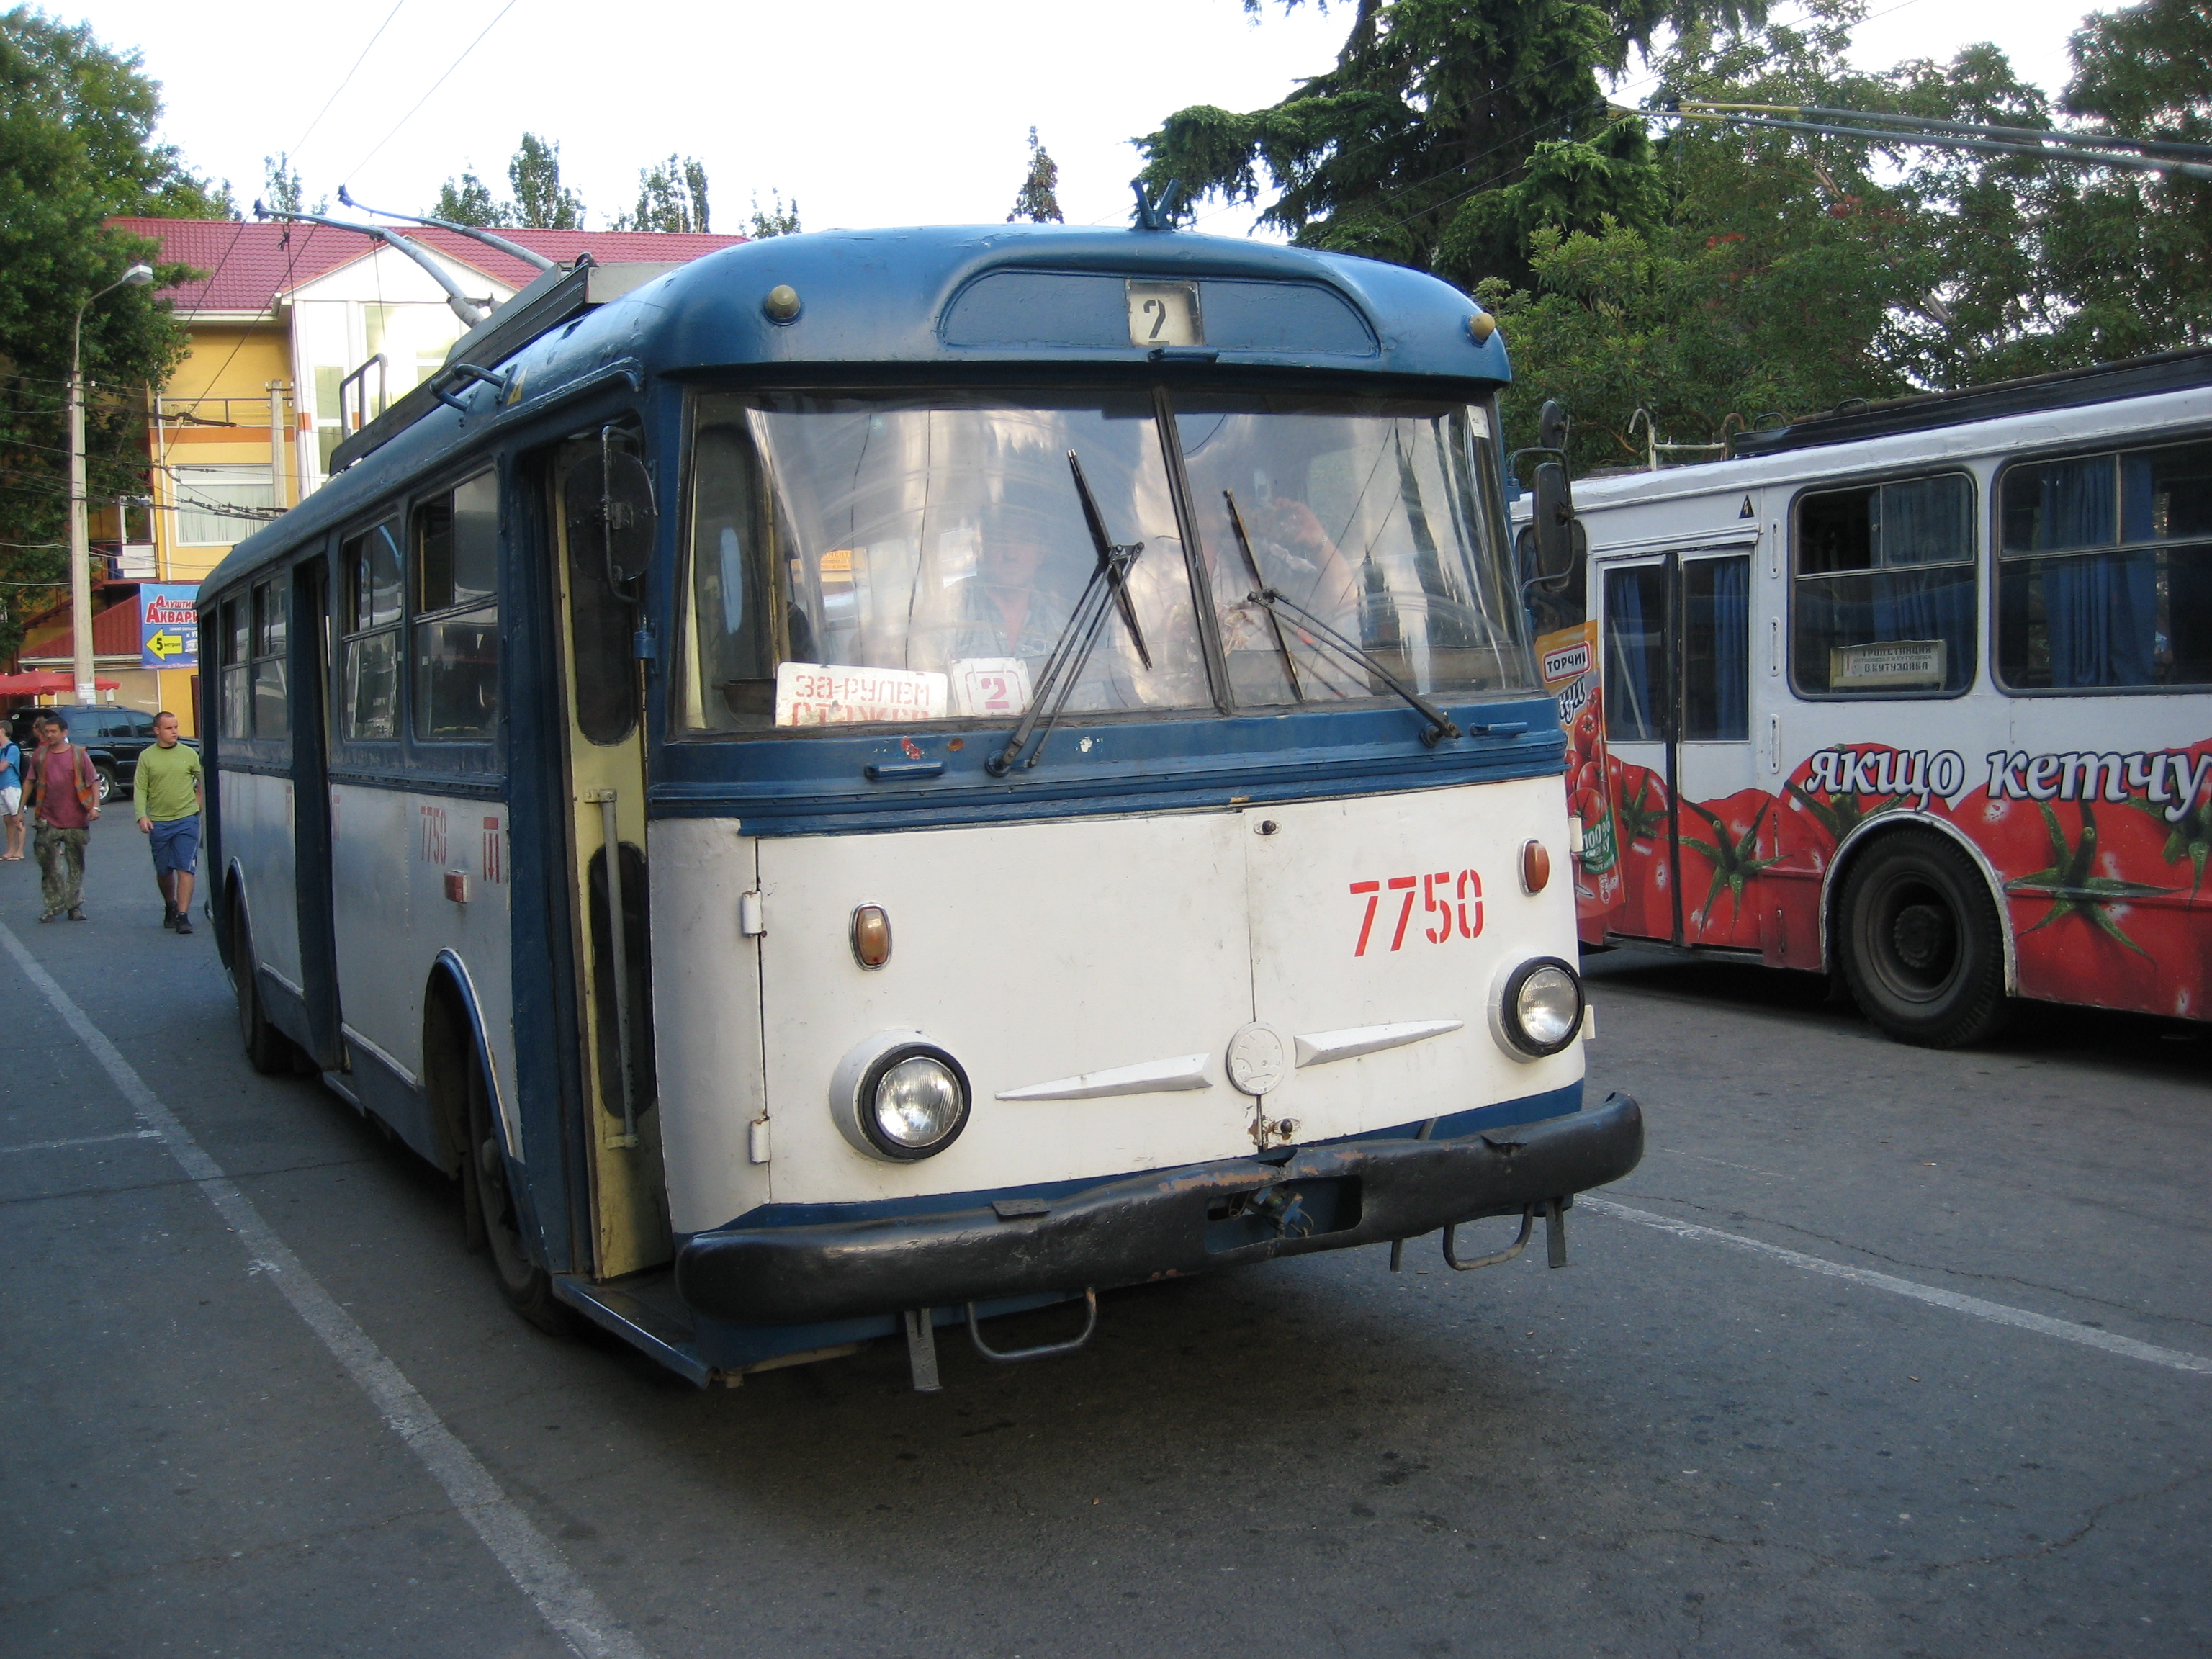 Crimean trolleybus, Škoda 9TrH29 # 7750